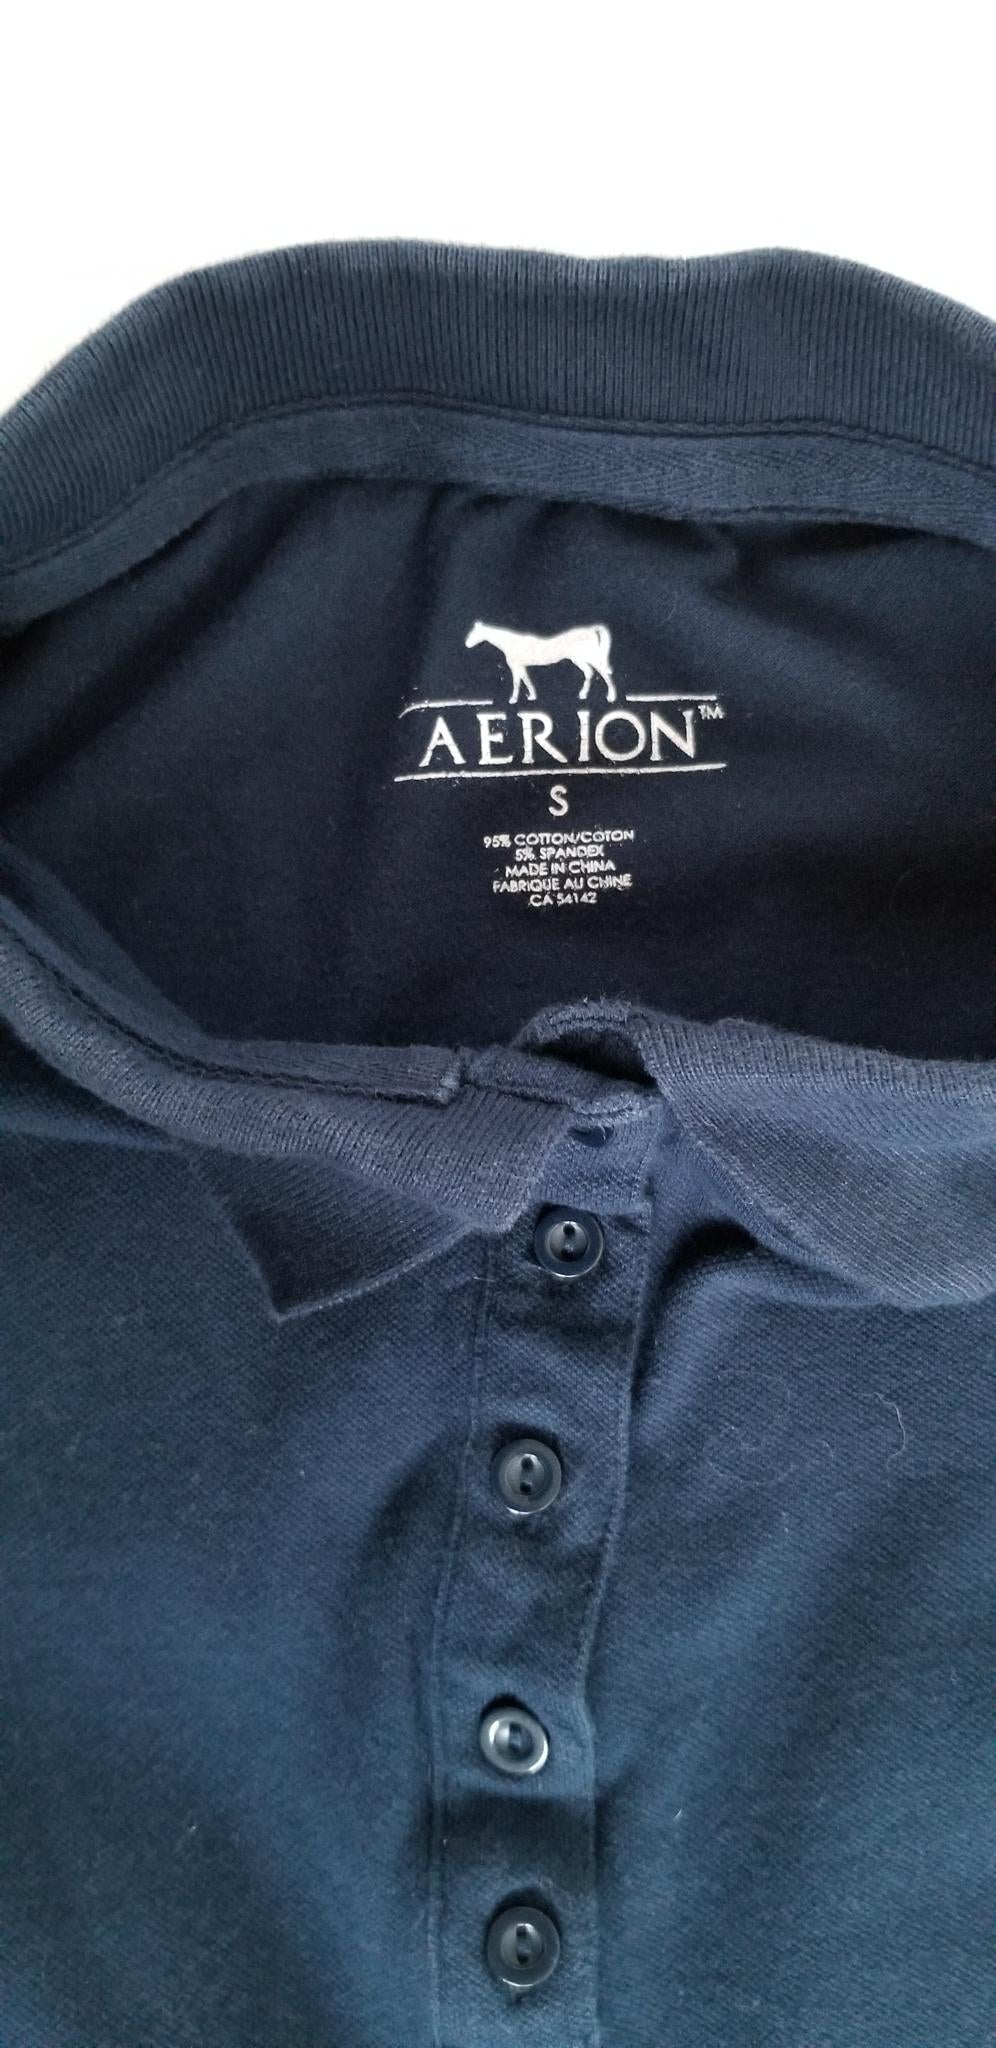 Aerion Pique Polo Shirt - Navy - Women's Small